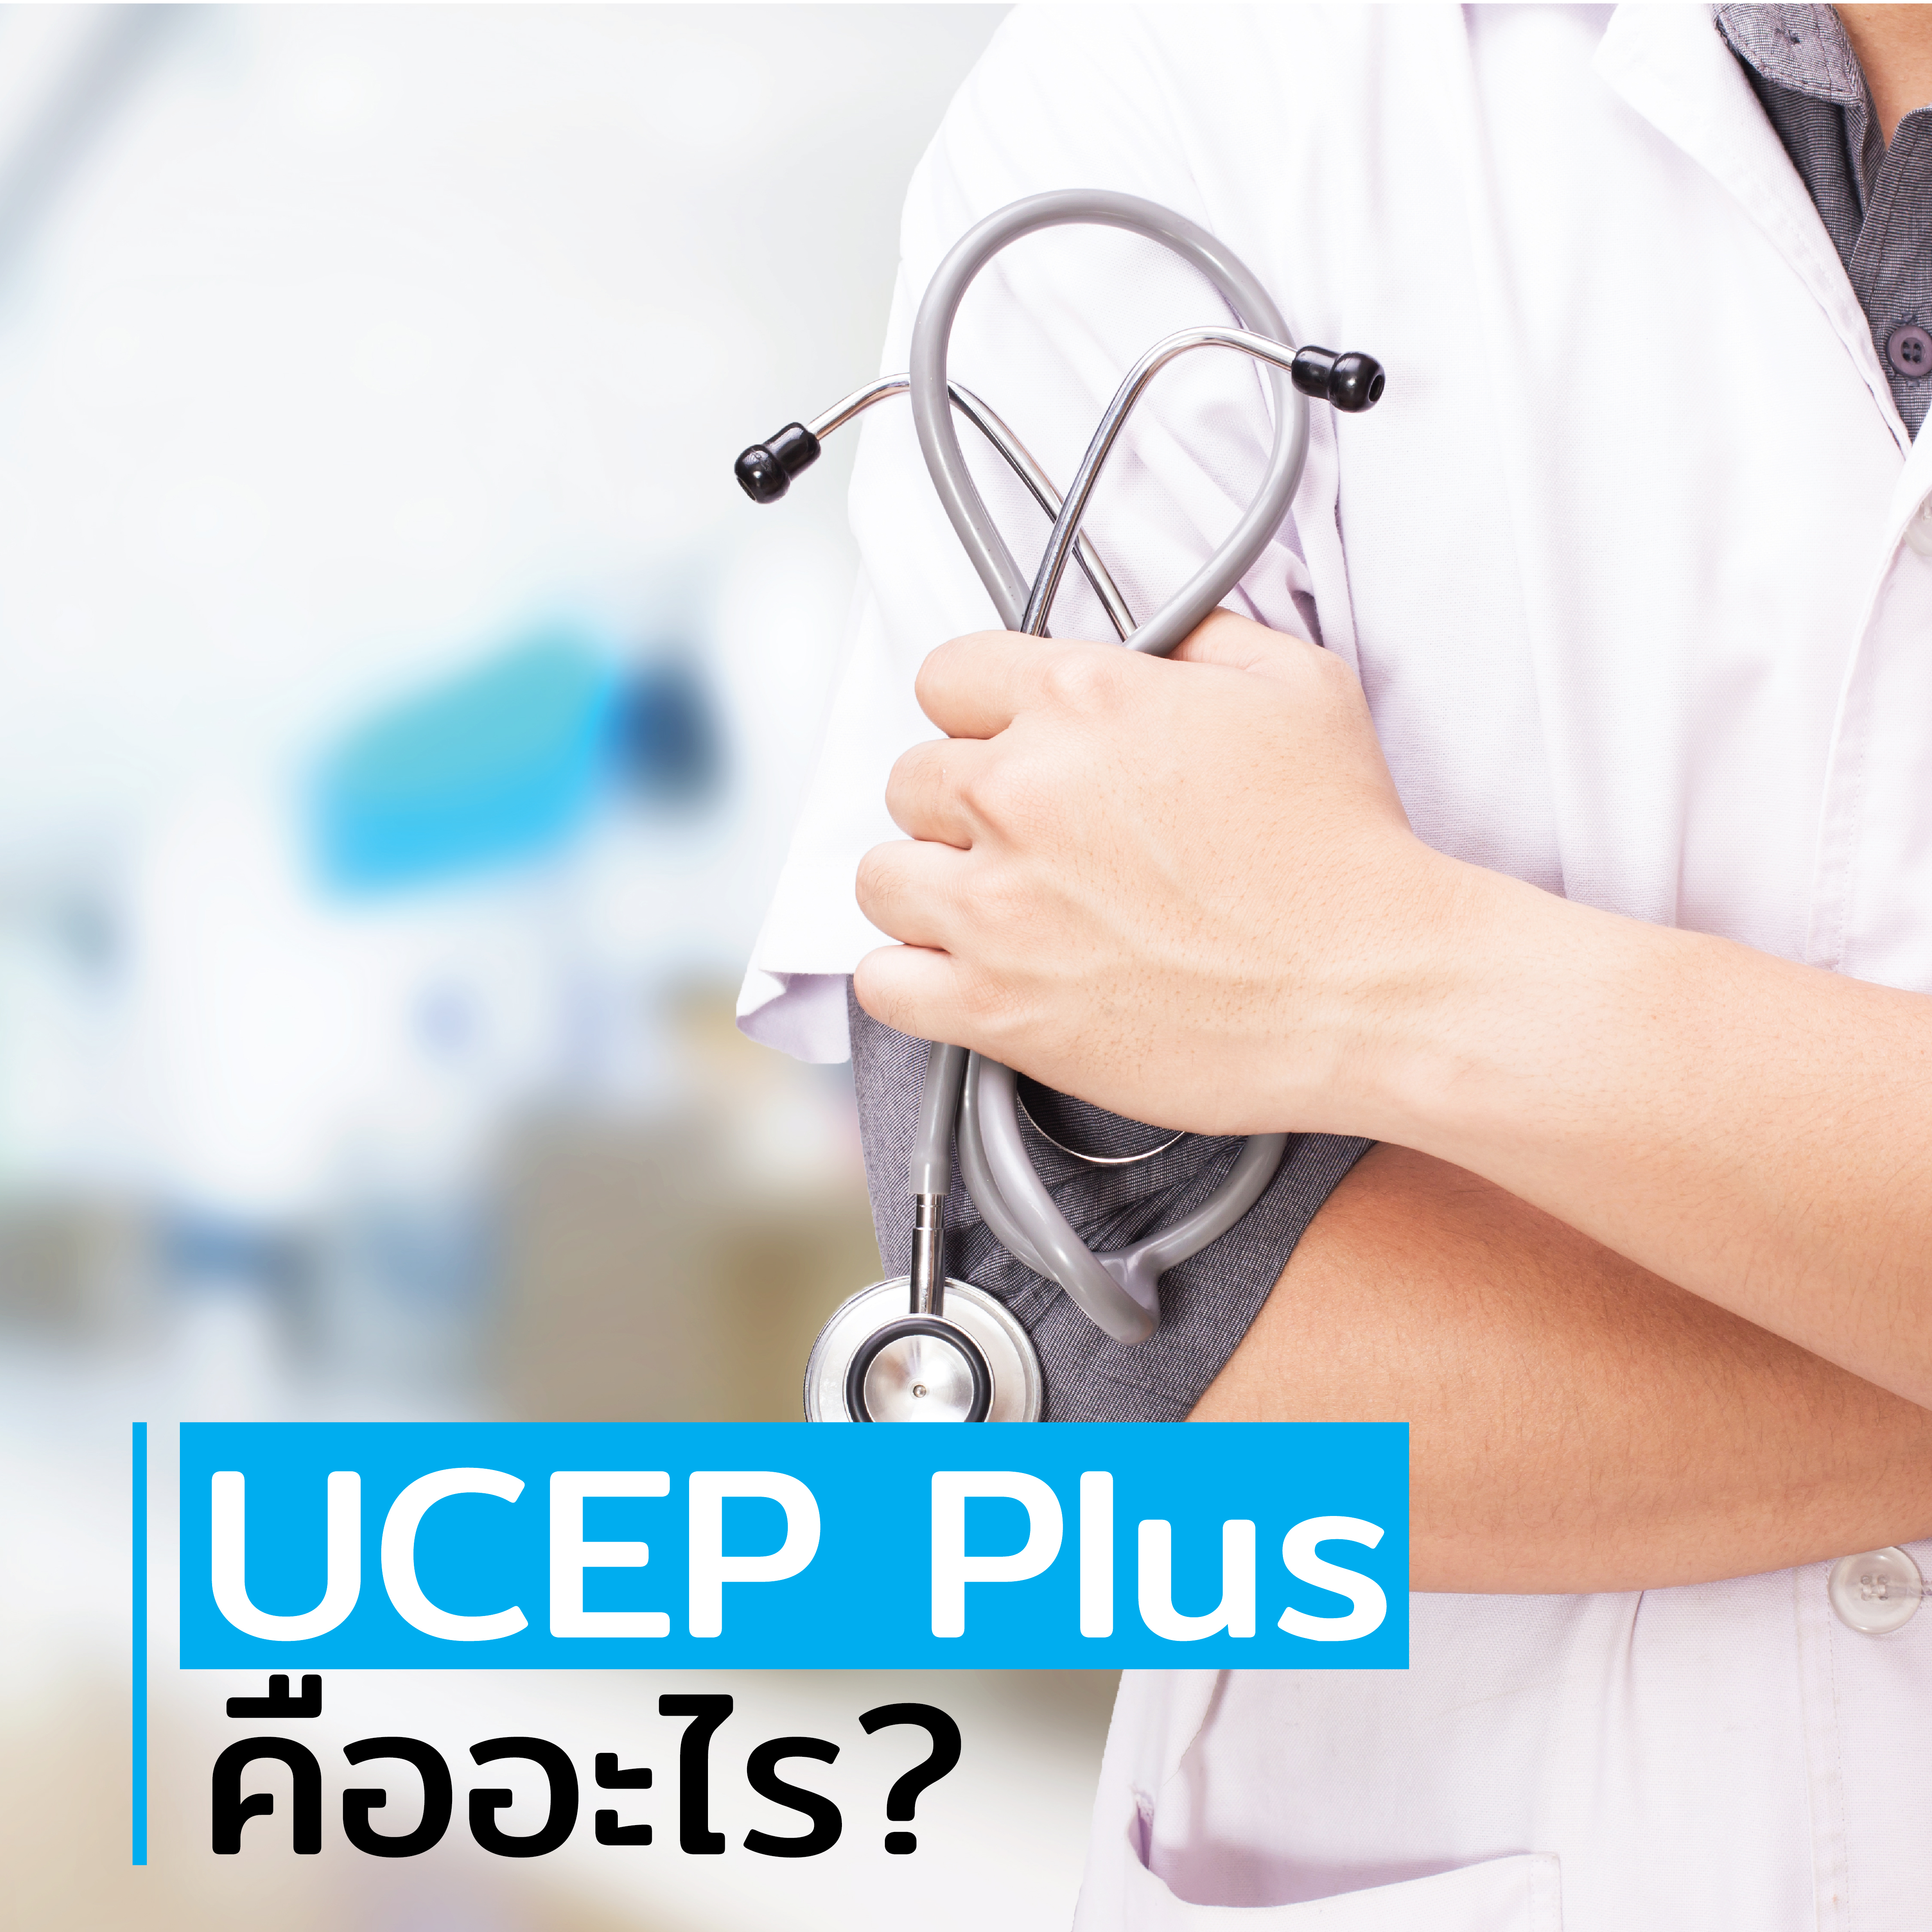 UCEP Plus คืออะไร?